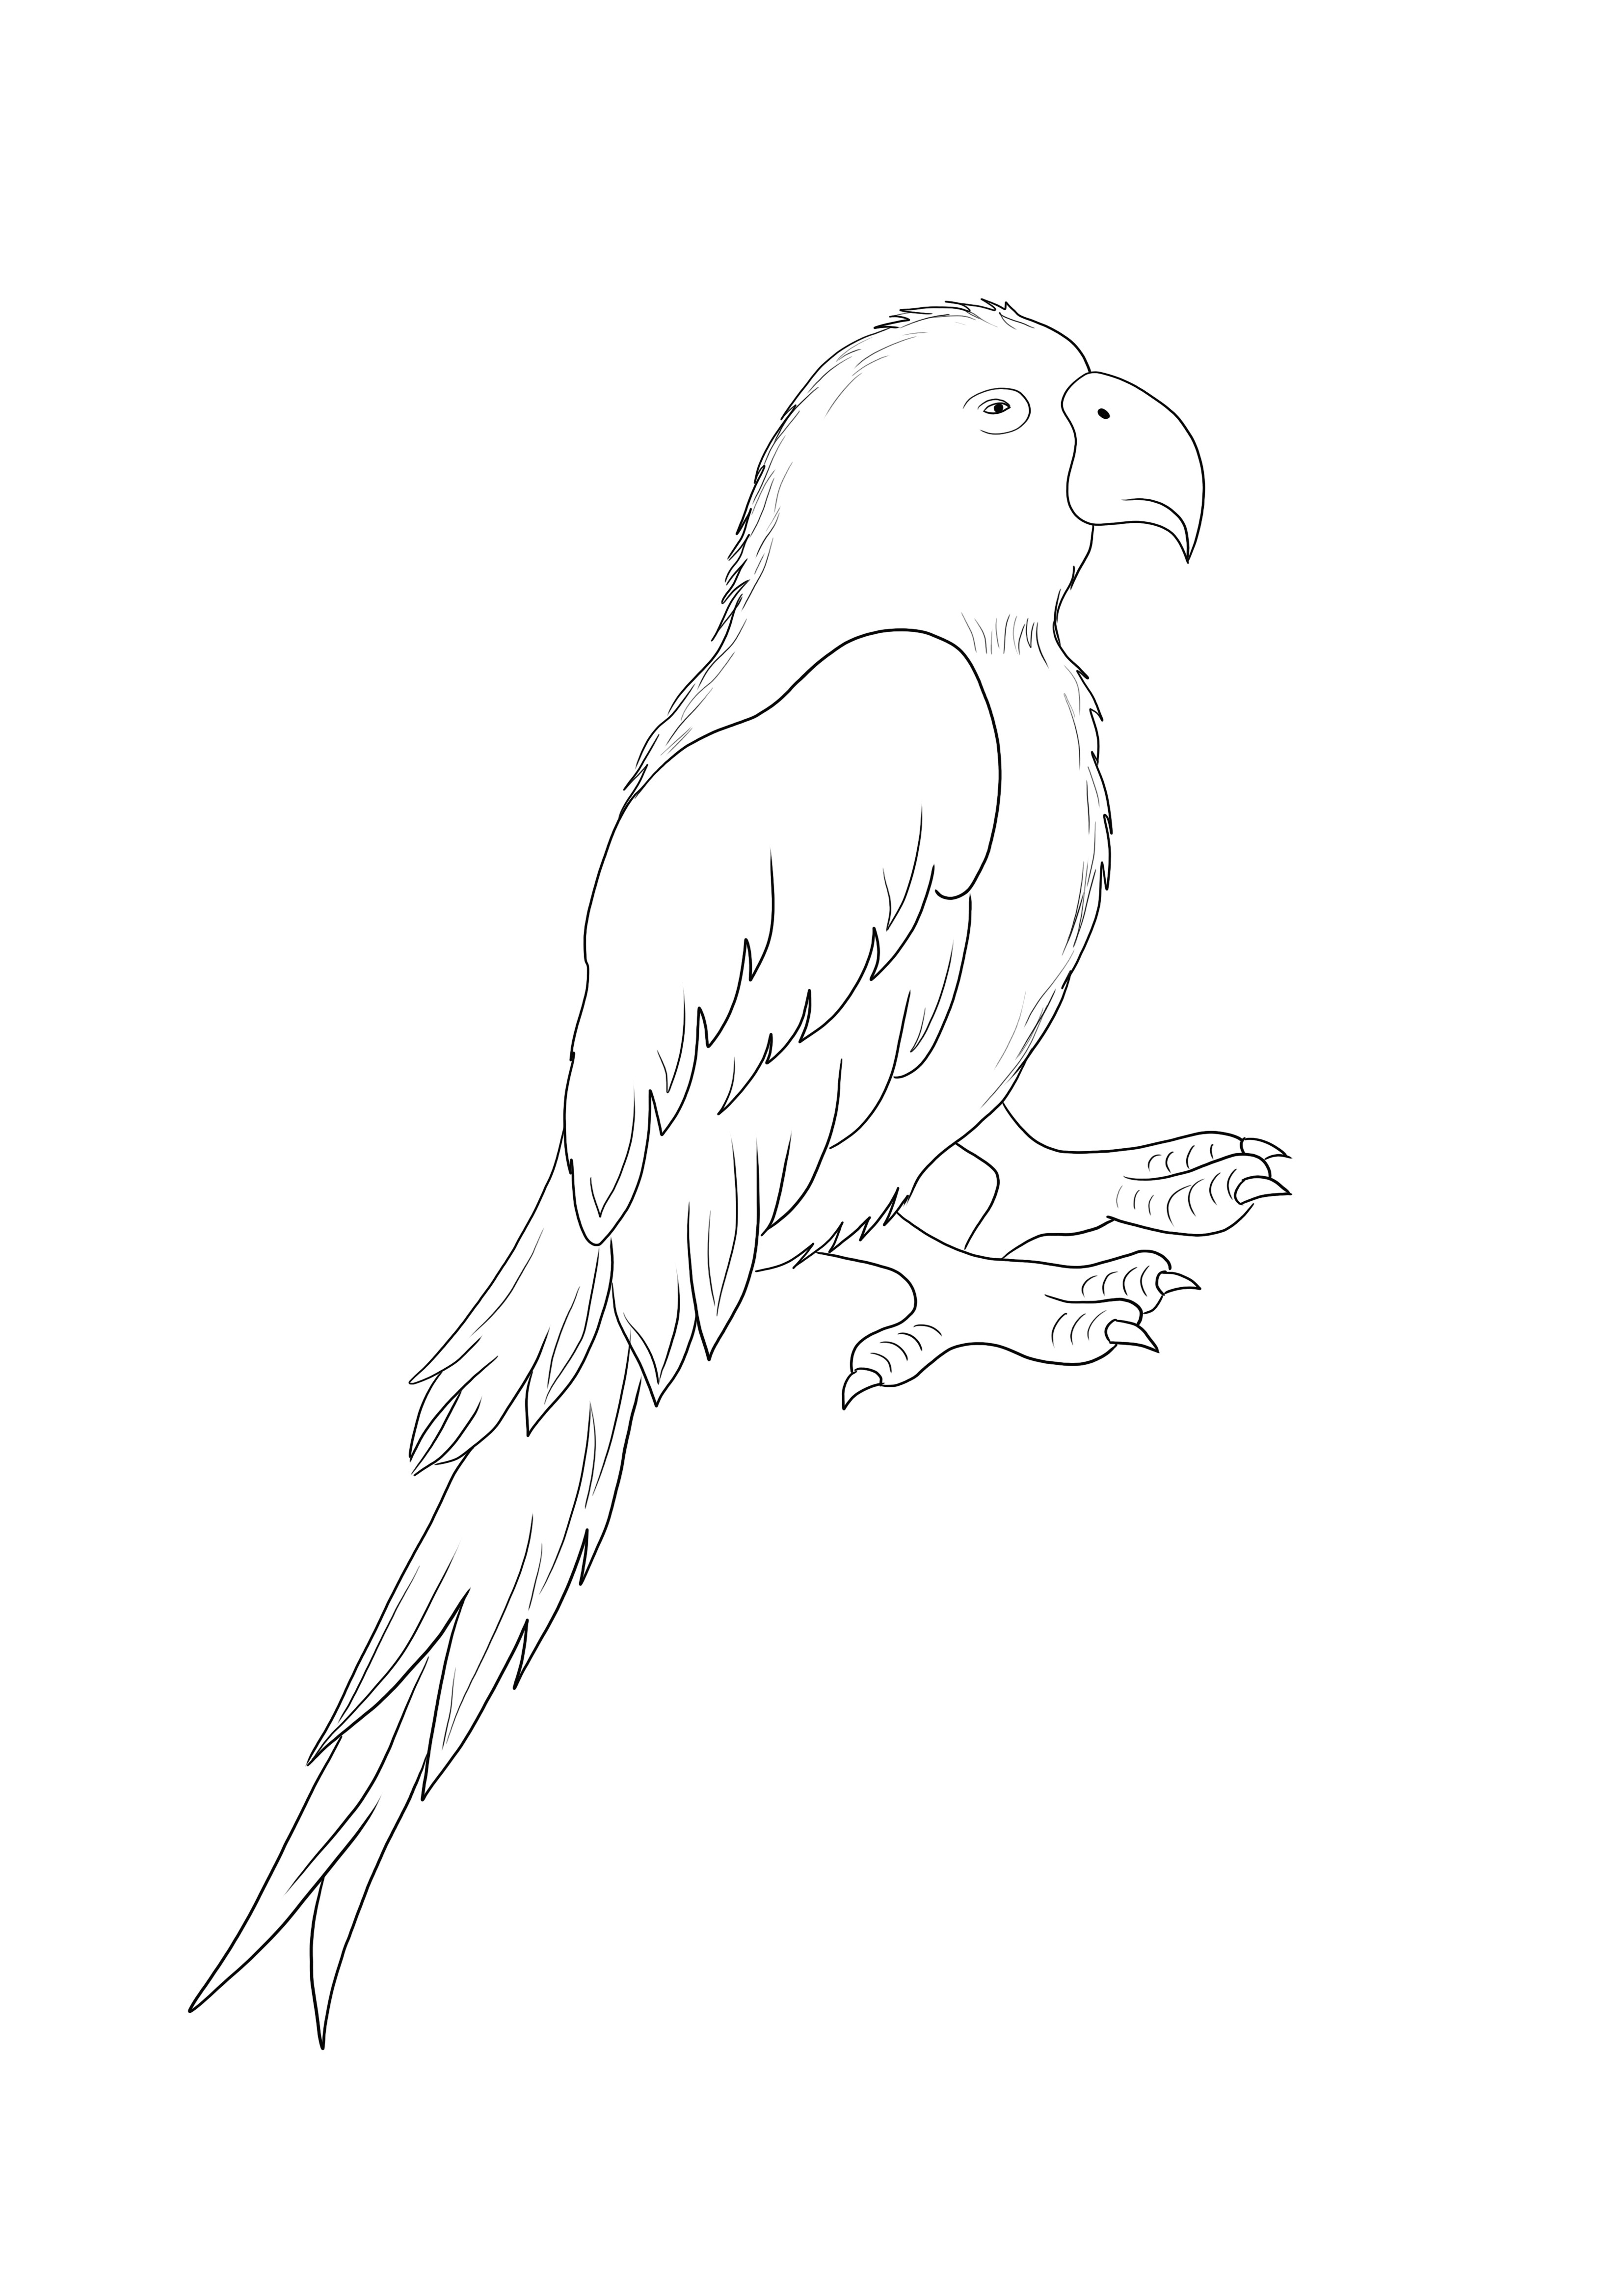 Parrot Bird ilmainen painatus ja väritys kaiken ikäisille lapsille